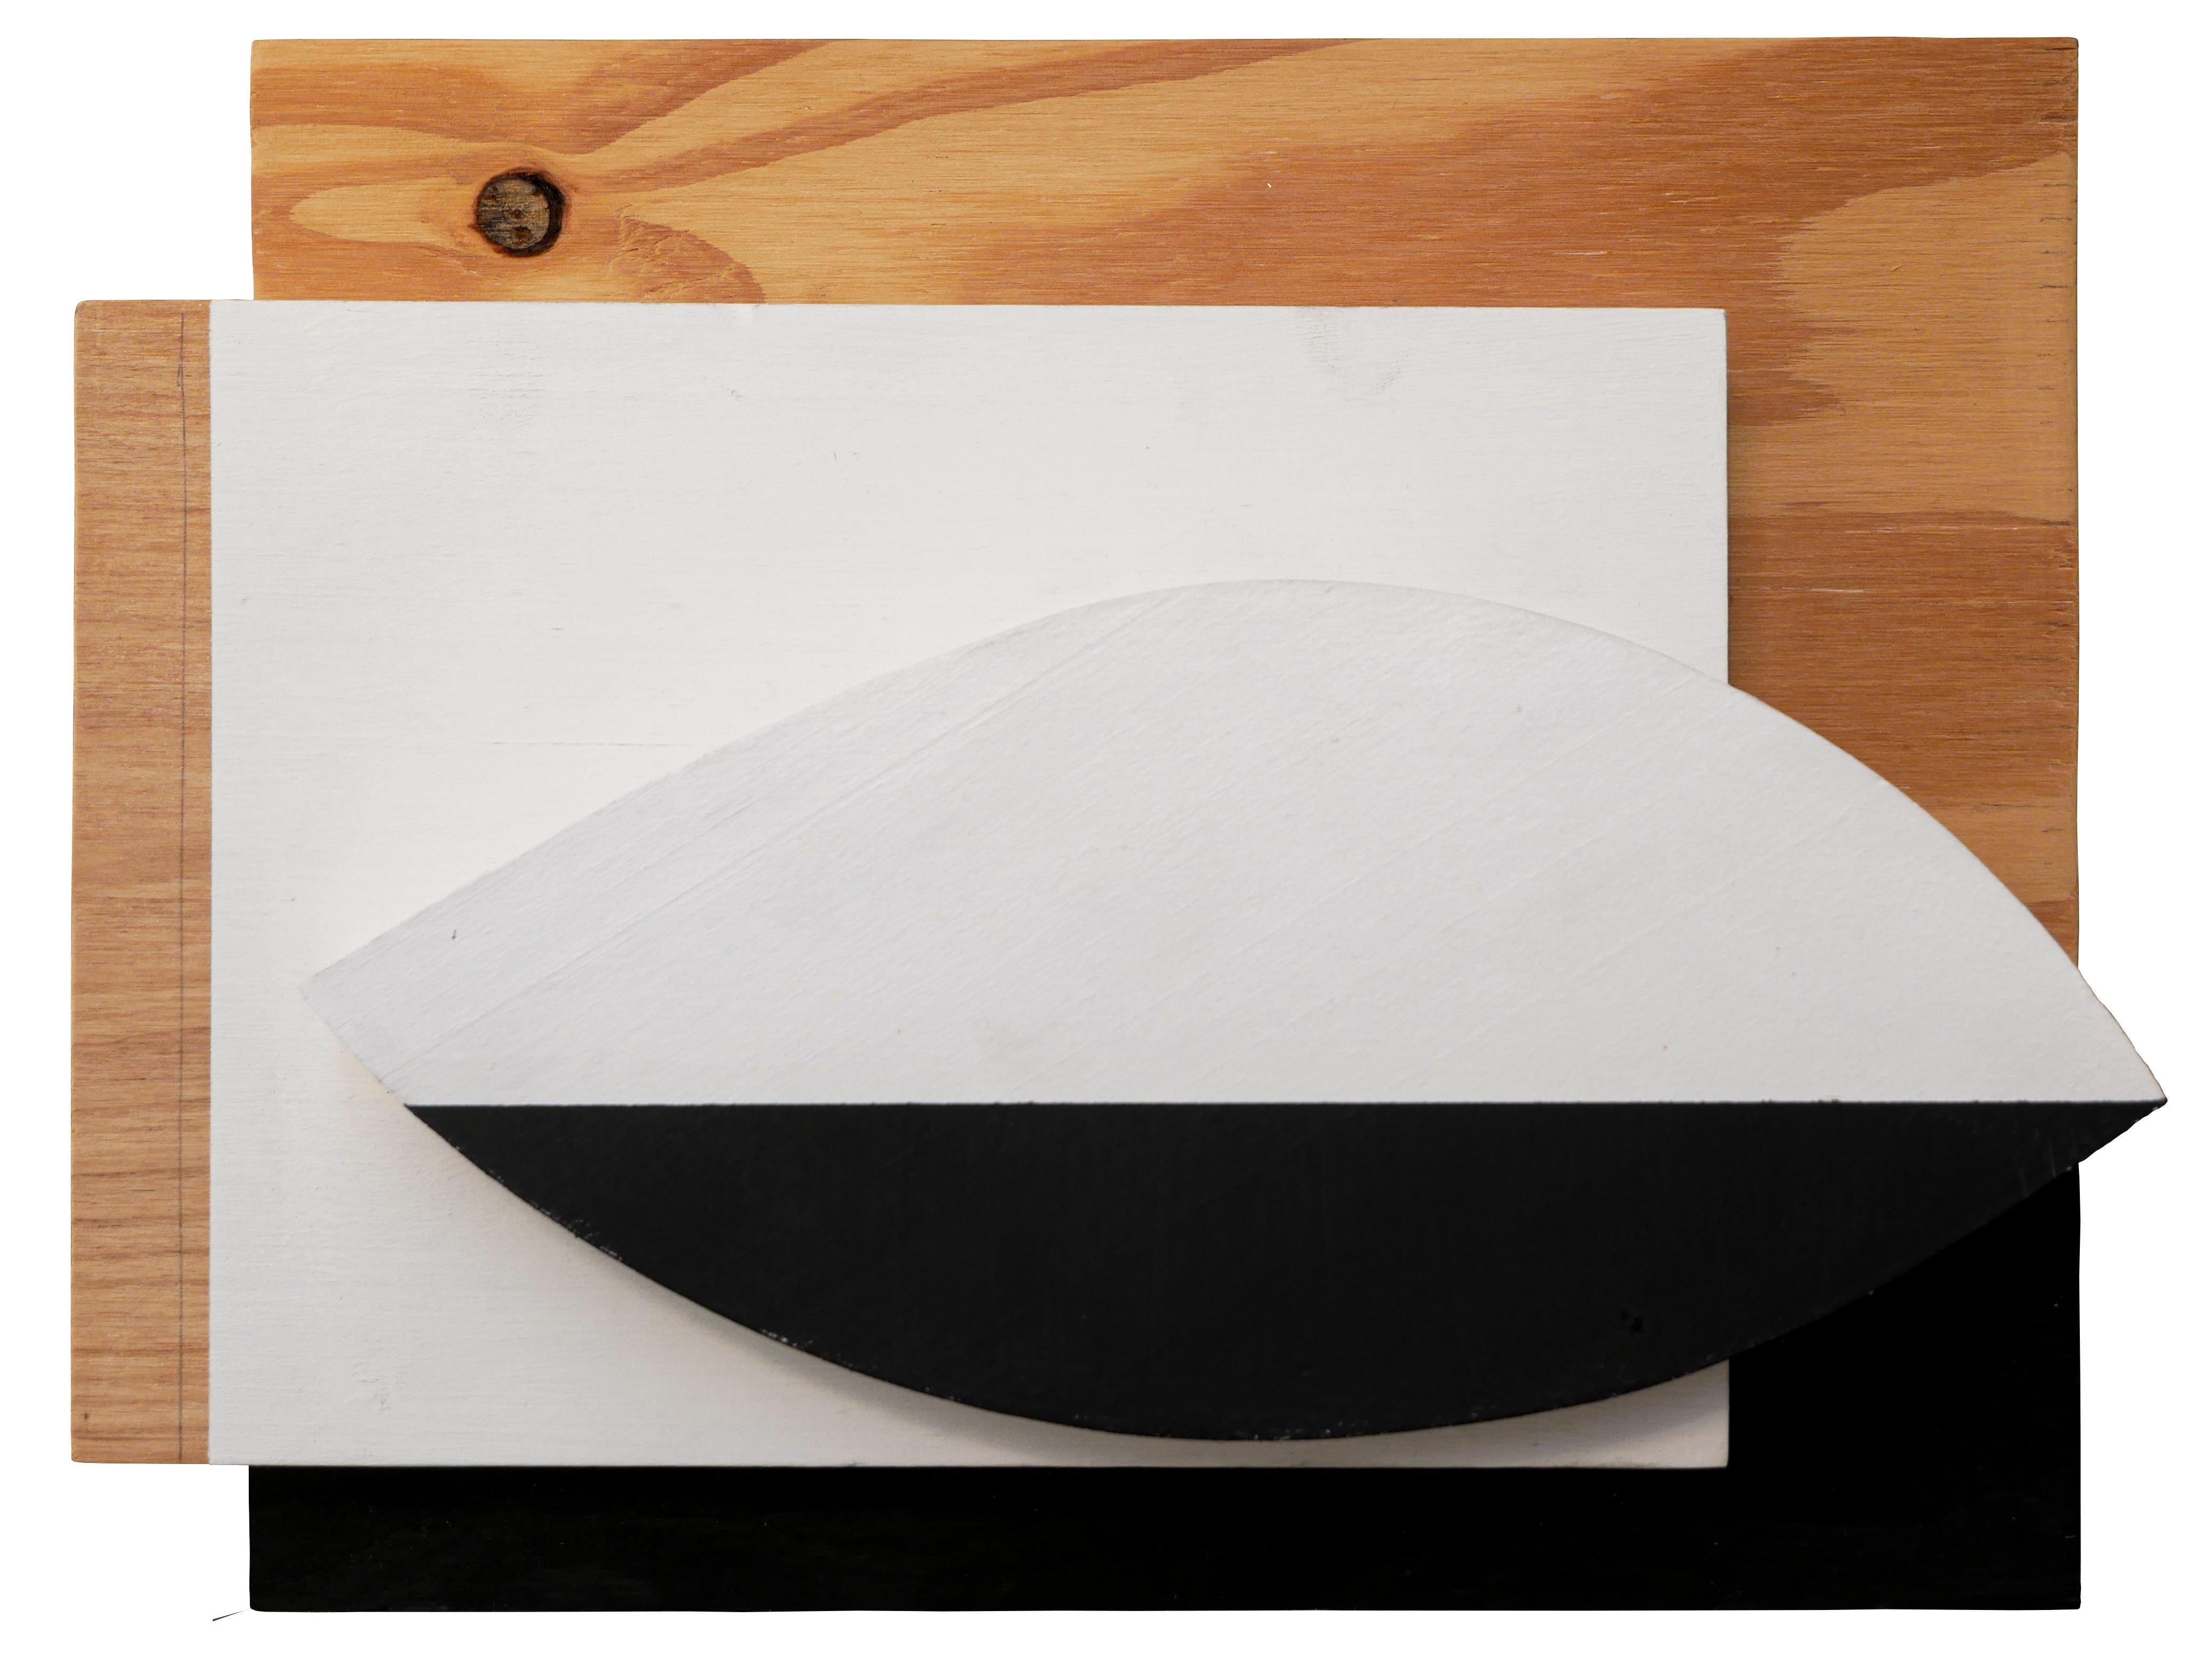 Abstract Sculpture Scott Woodard - « Minimal Black & White 3 » - Sculpture en bois abstraite géométrique et minimaliste